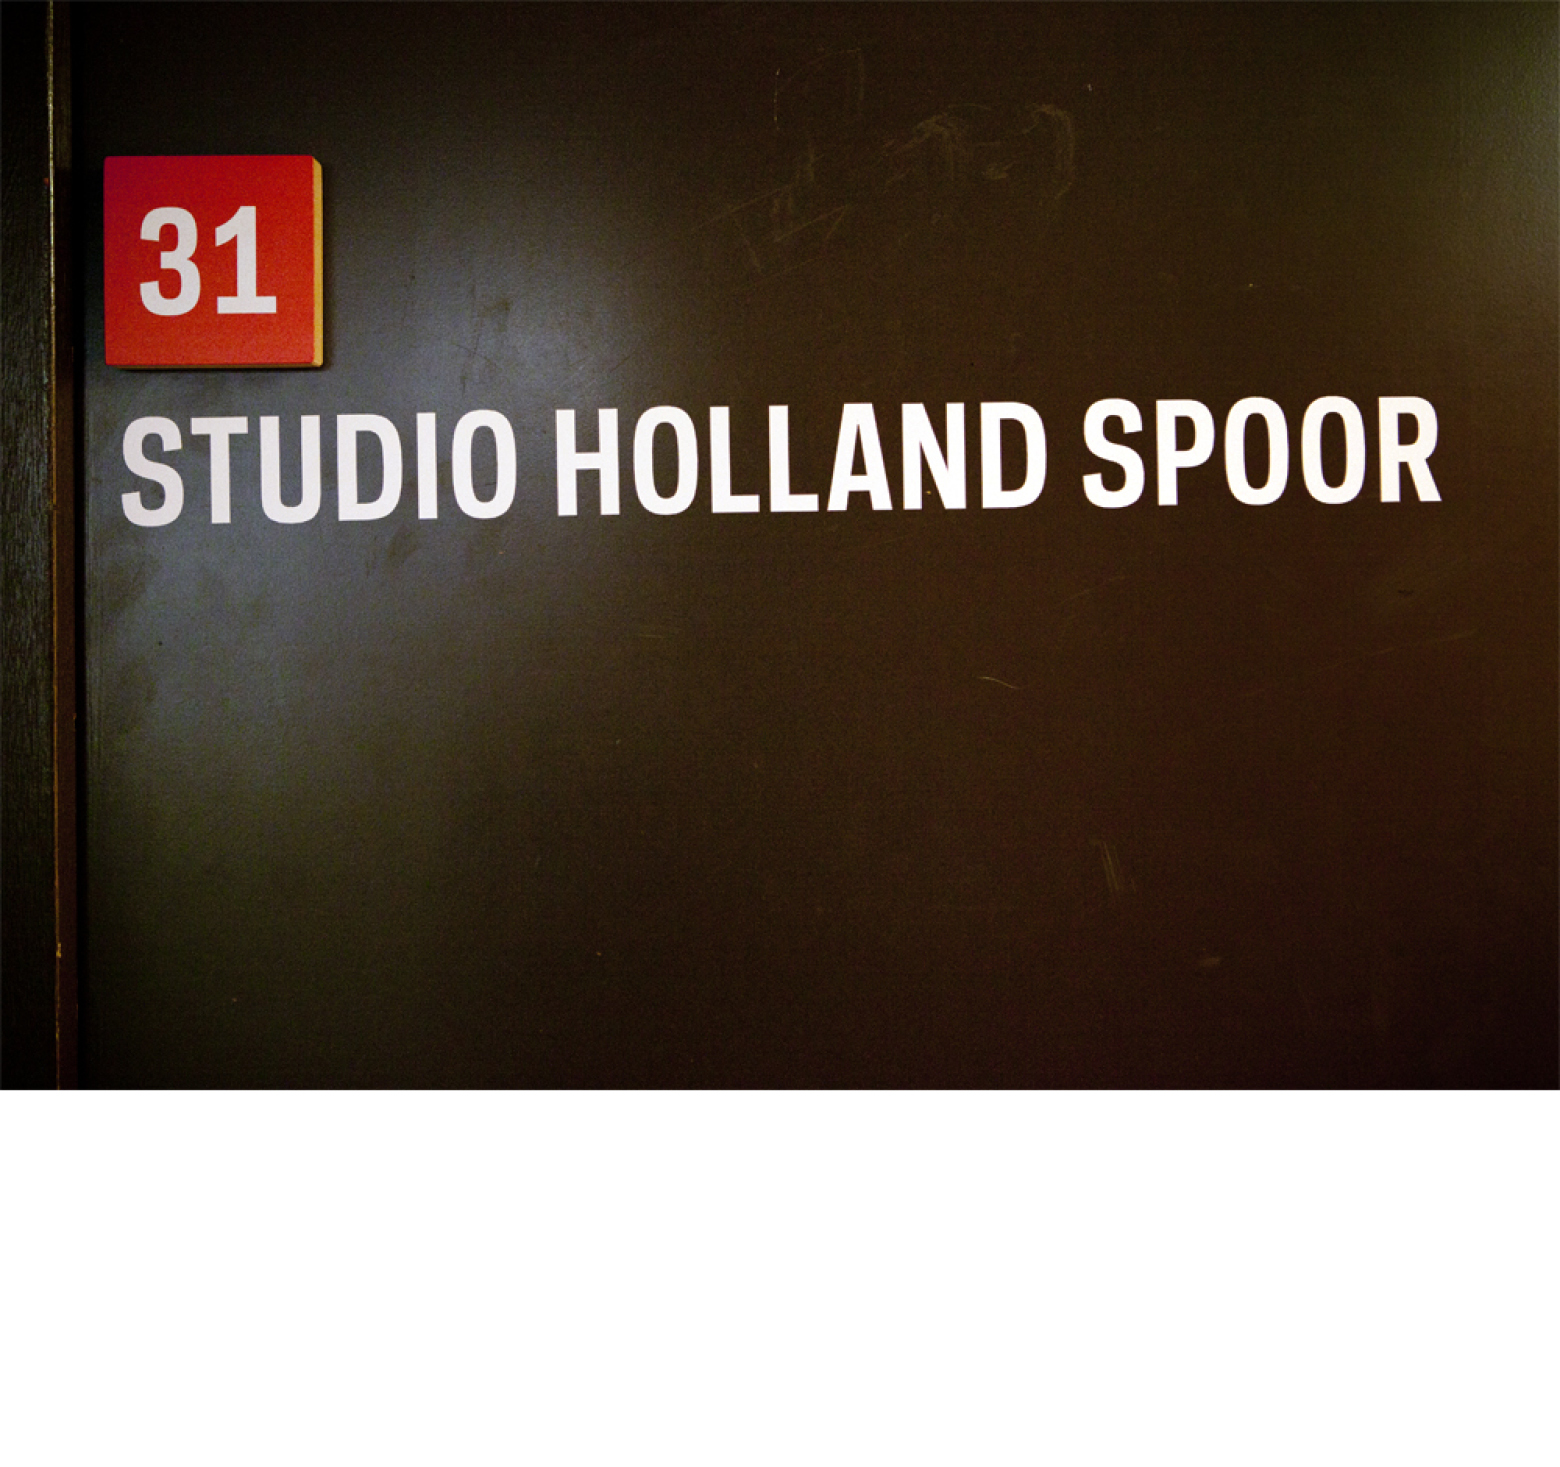 HPC_Studio_Het_Mes_holland spoor 31